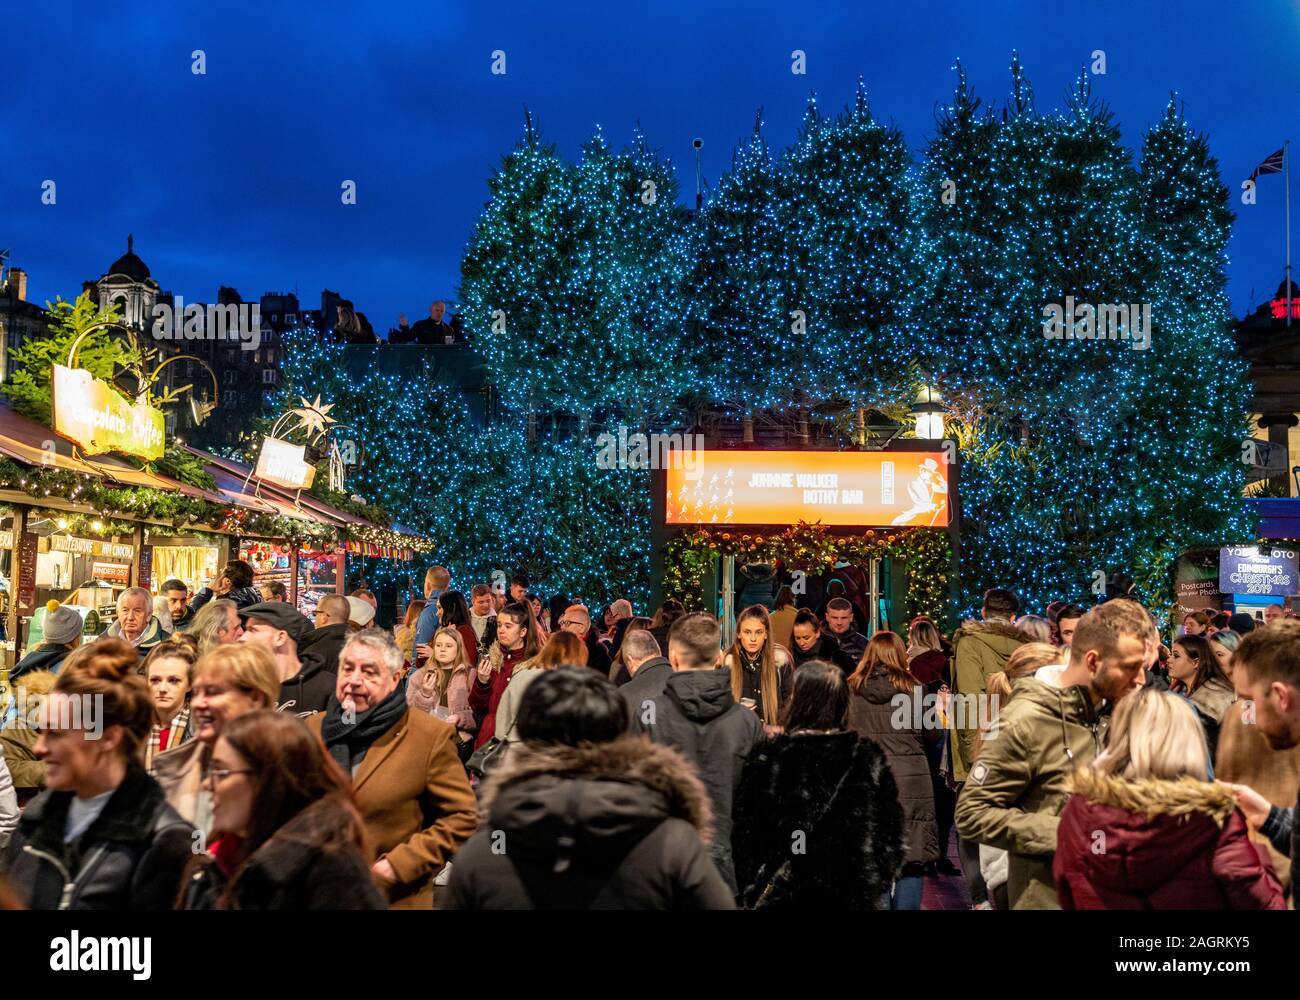 Massen von Menschen außerhalb von Johnnie Walker Bothy Bar in Edinburgh Weihnachtsmarkt in West Princes Street Gardens in Edinburgh, Schottland, Großbritannien Stockfoto